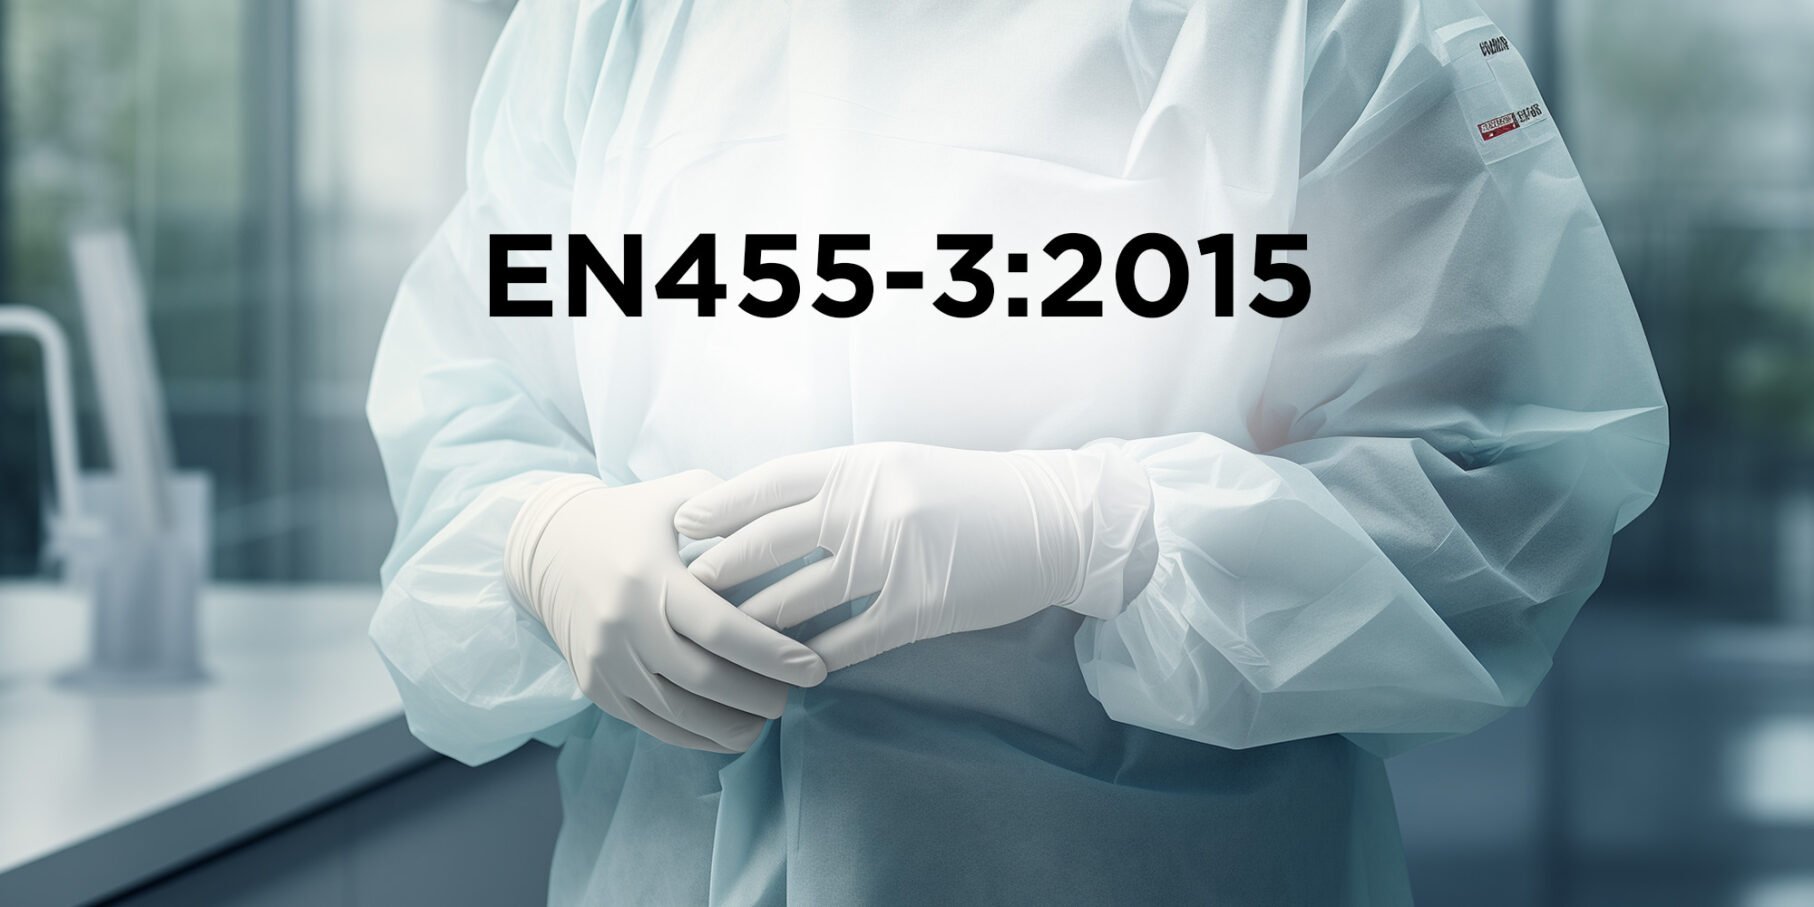 EN455-3:2015 by Eastwest Medico